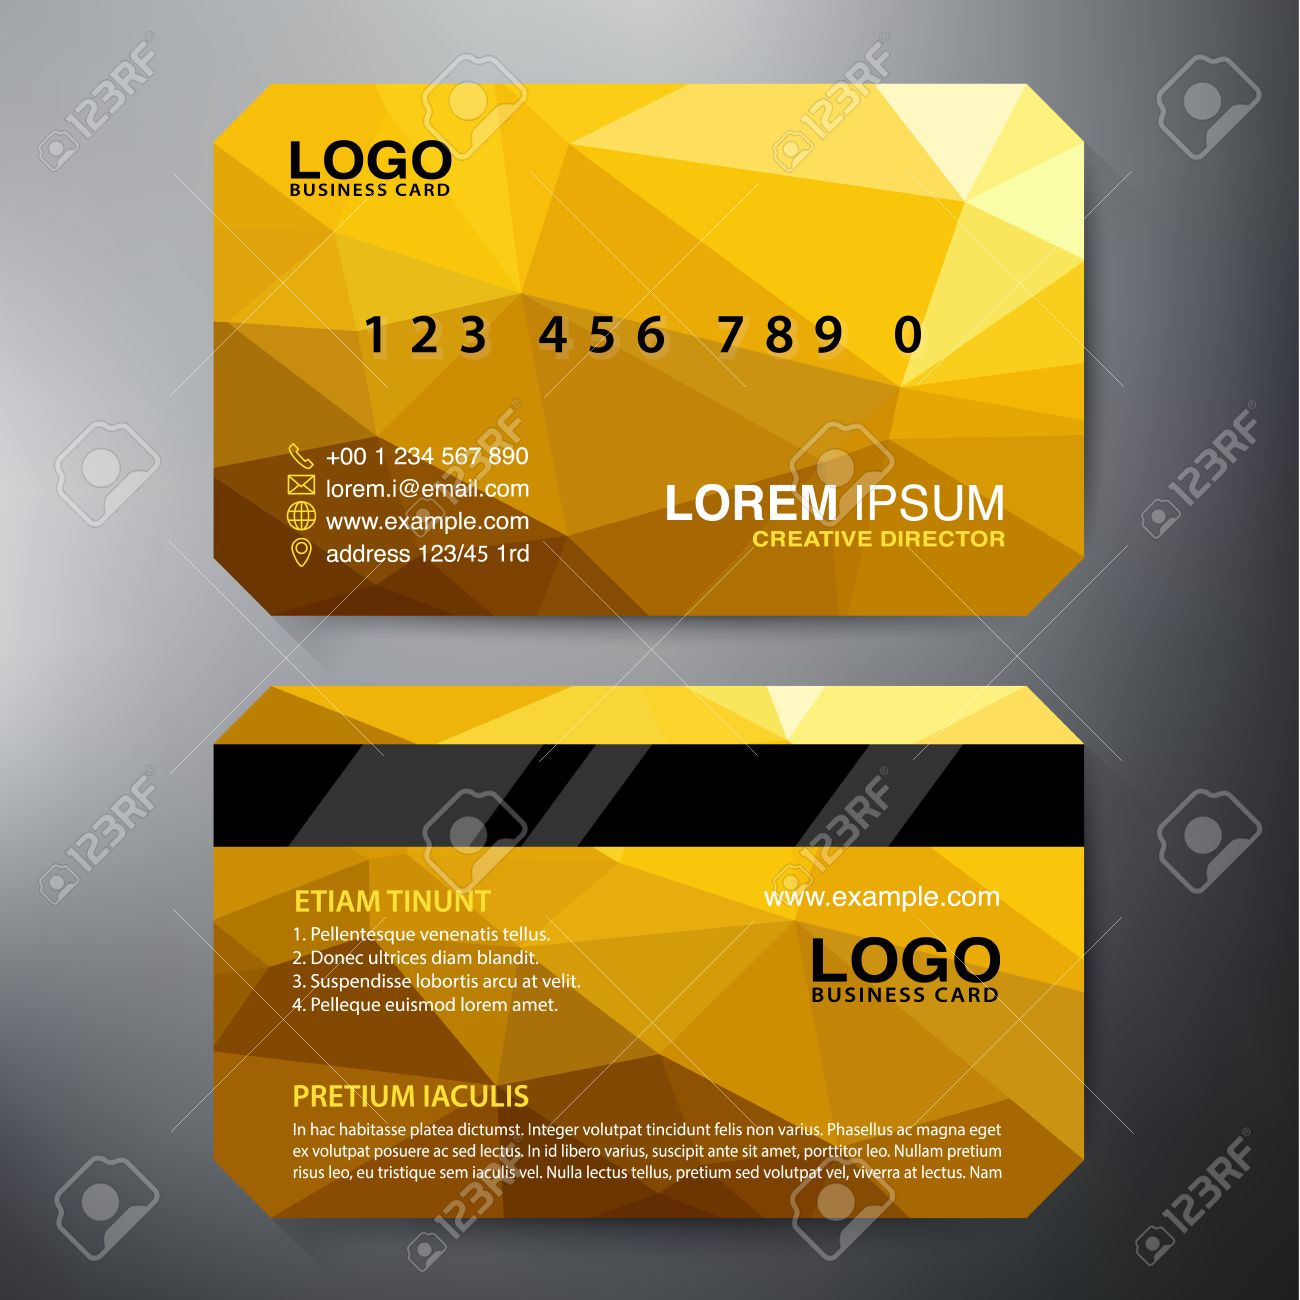 Modern Business Card Design Template. Vector Illustration Pertaining To Modern Business Card Design Templates